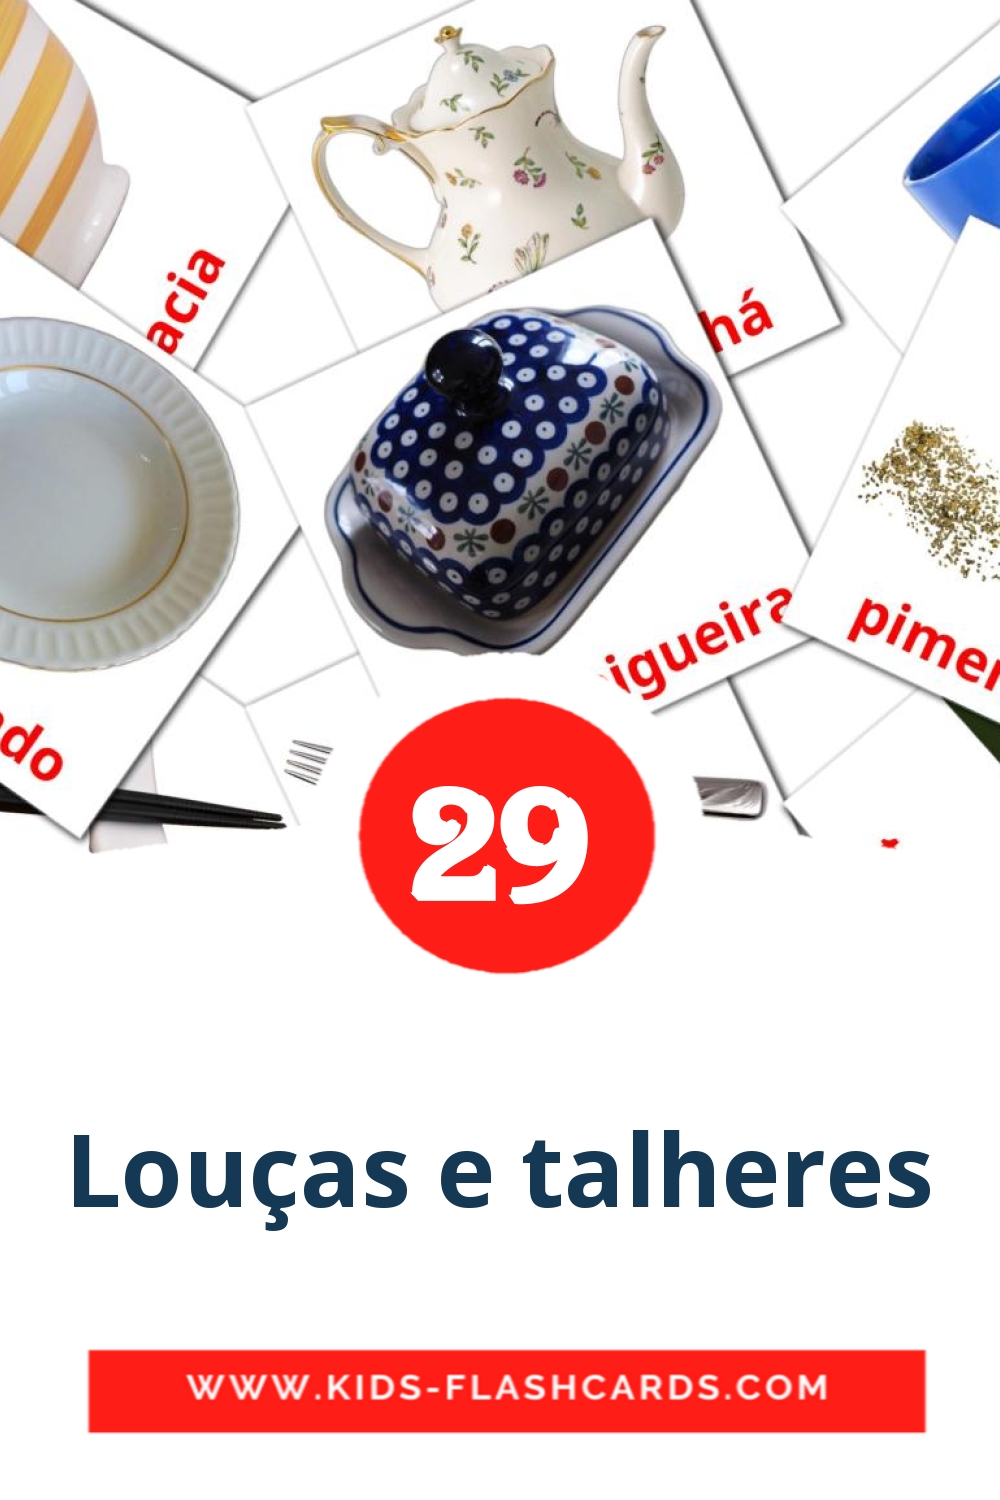 29 carte illustrate di Louças e talheres per la scuola materna in portoghese